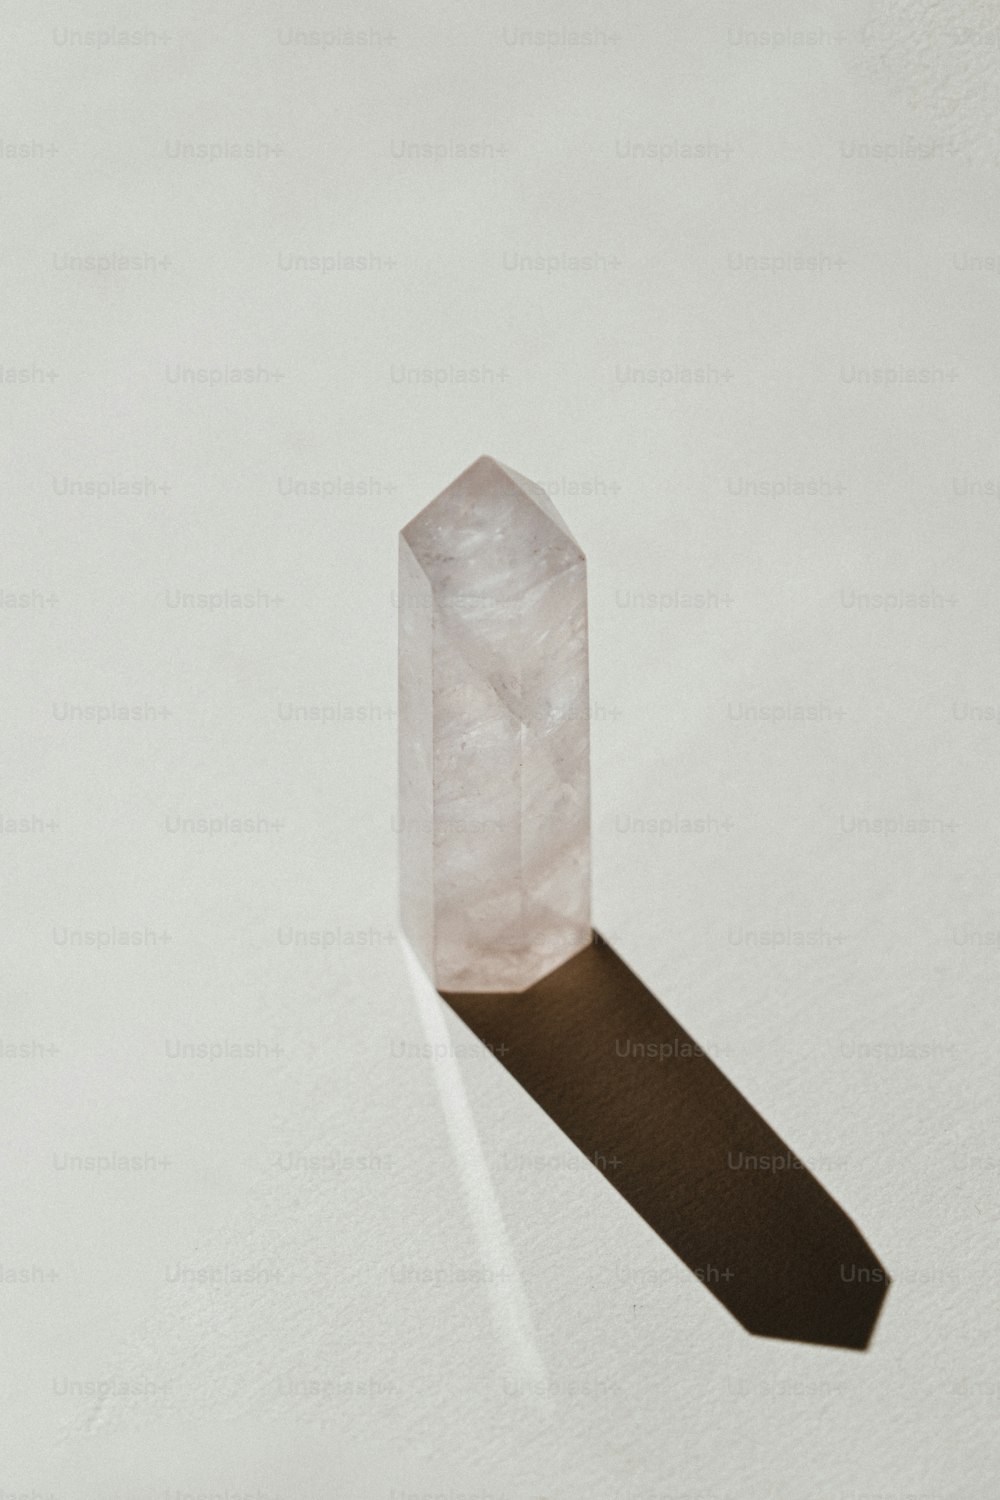 Un solo cristal sobre una superficie blanca con una sombra larga